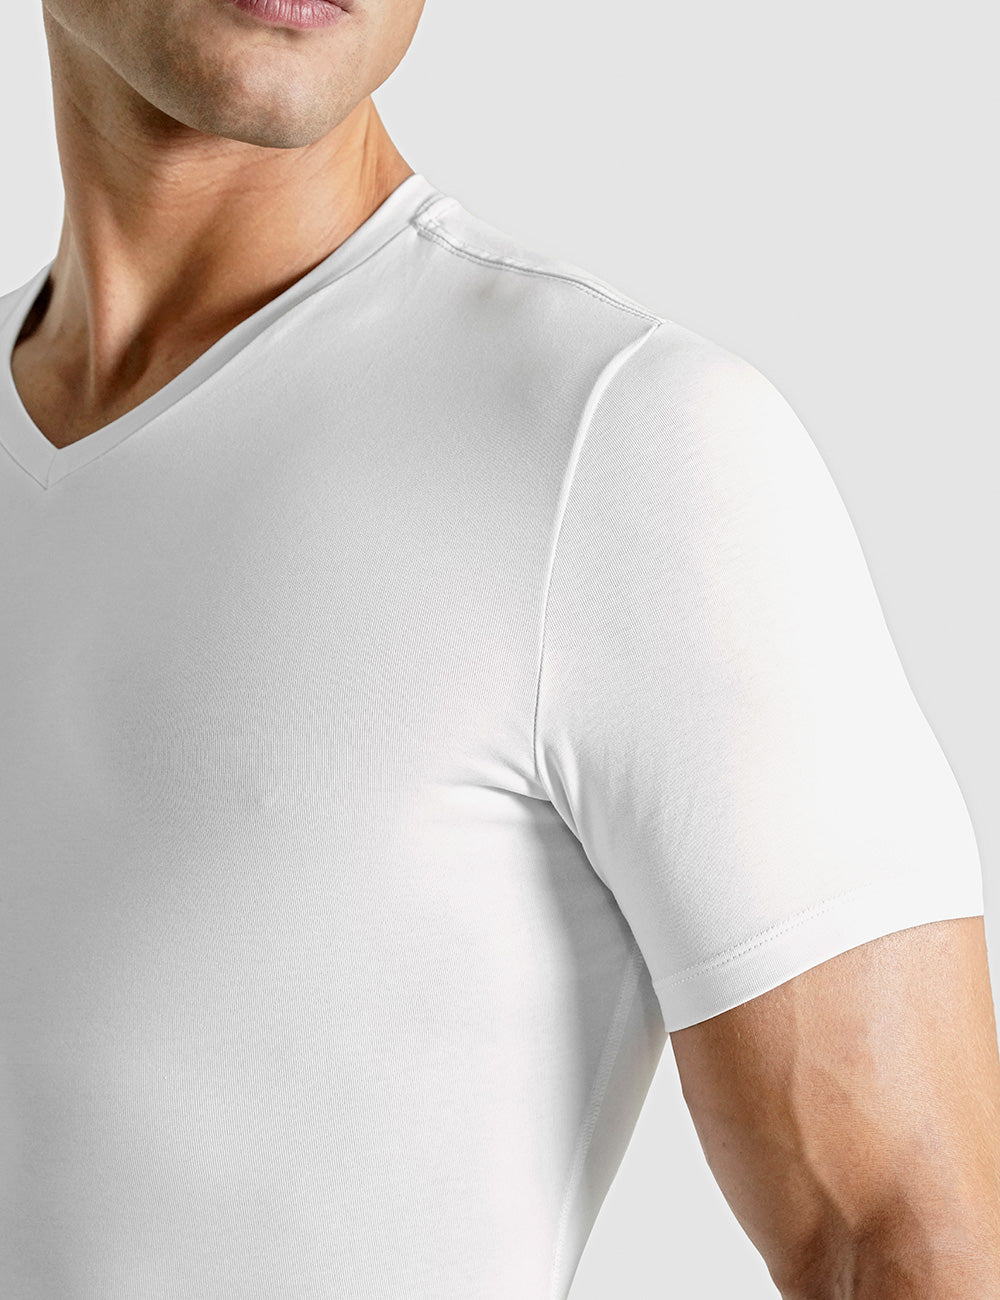 Cotton Compression T-Shirt